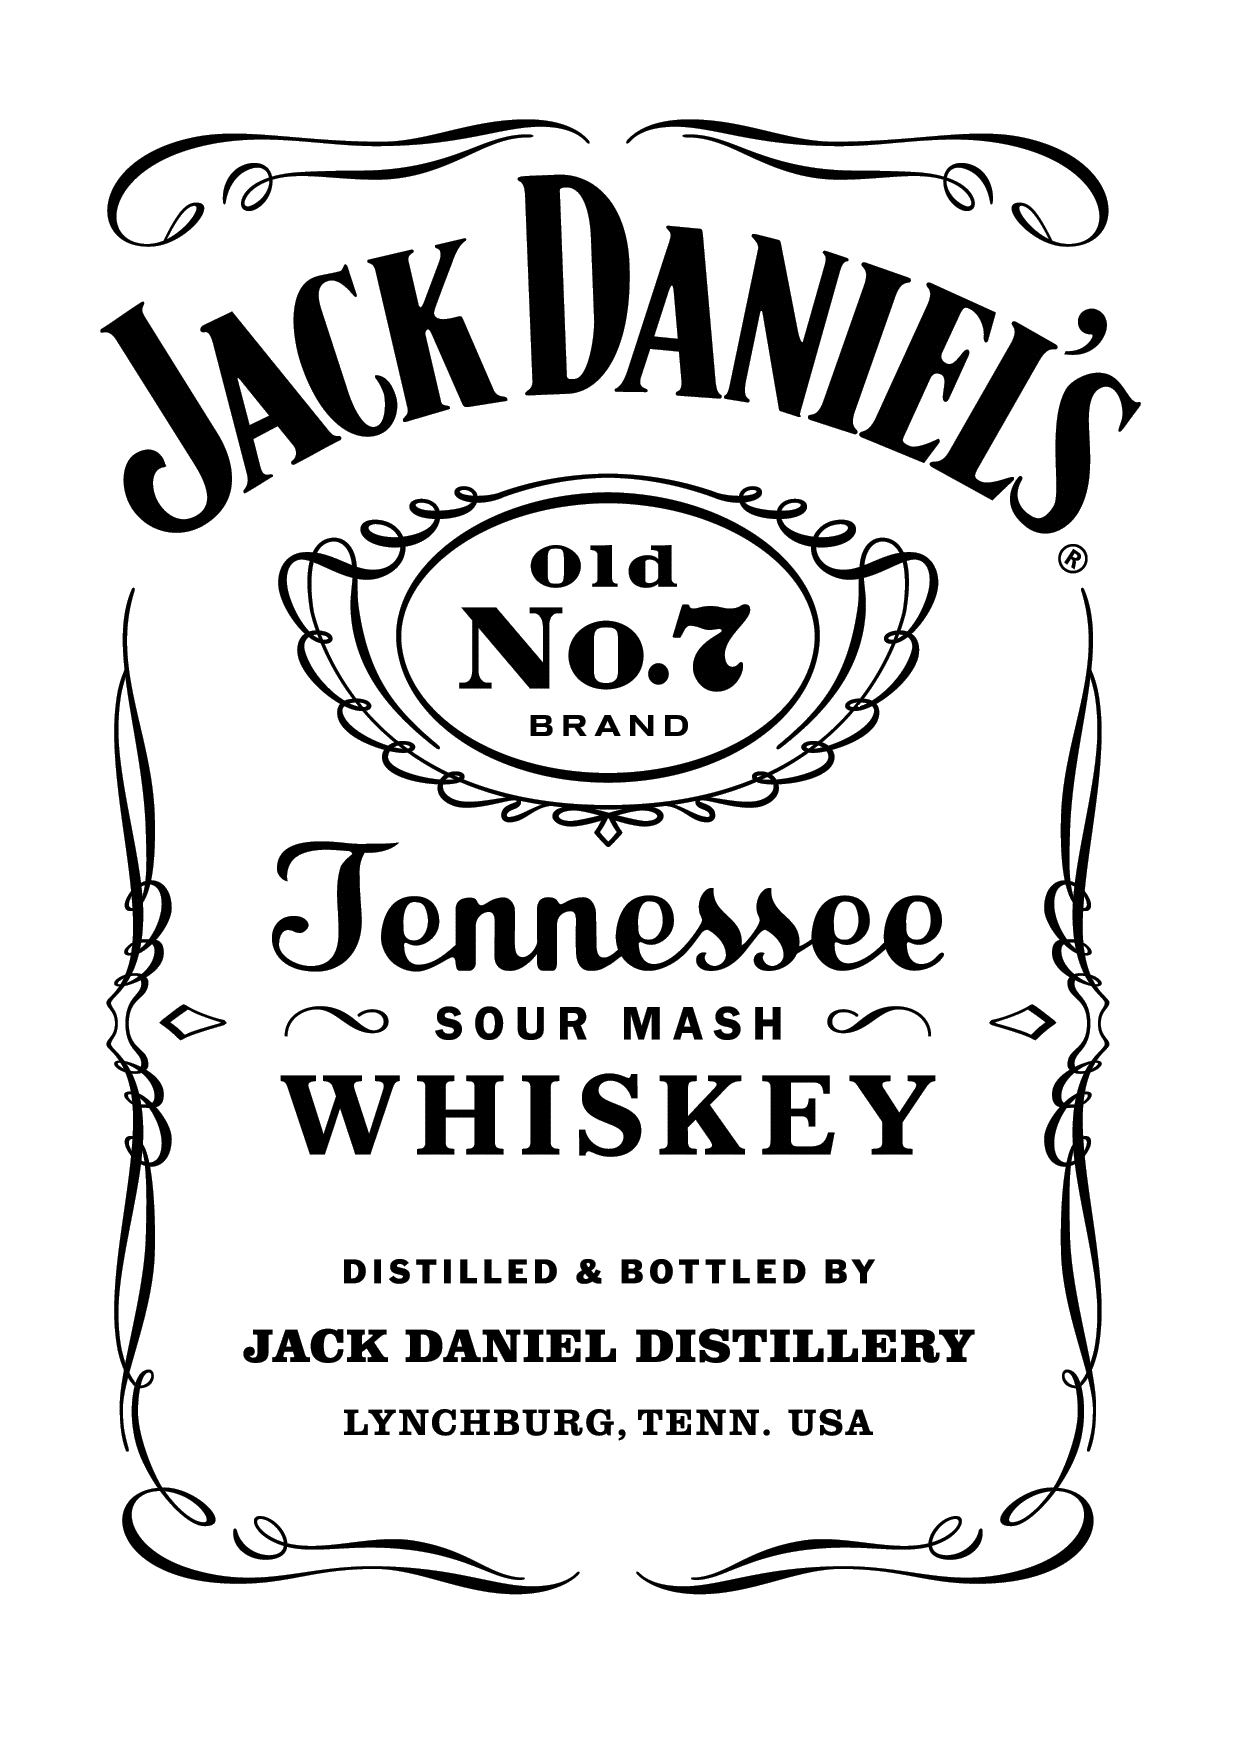 Old No. 7 Logo - Jack Daniel's Old No. 7 | drawing | Jack daniels, Jack daniels logo ...